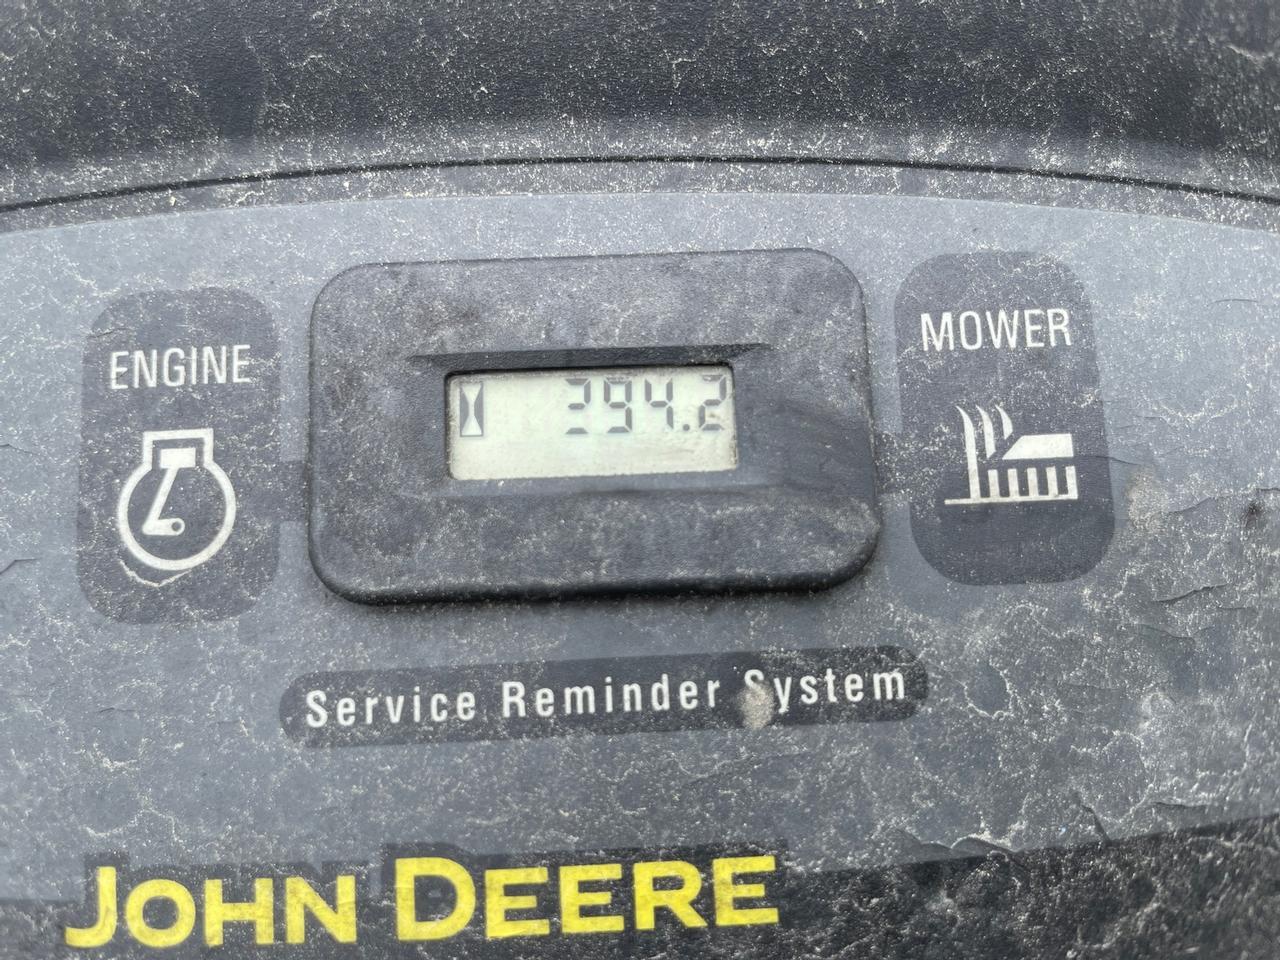 John Deere L110 Lawn Mower